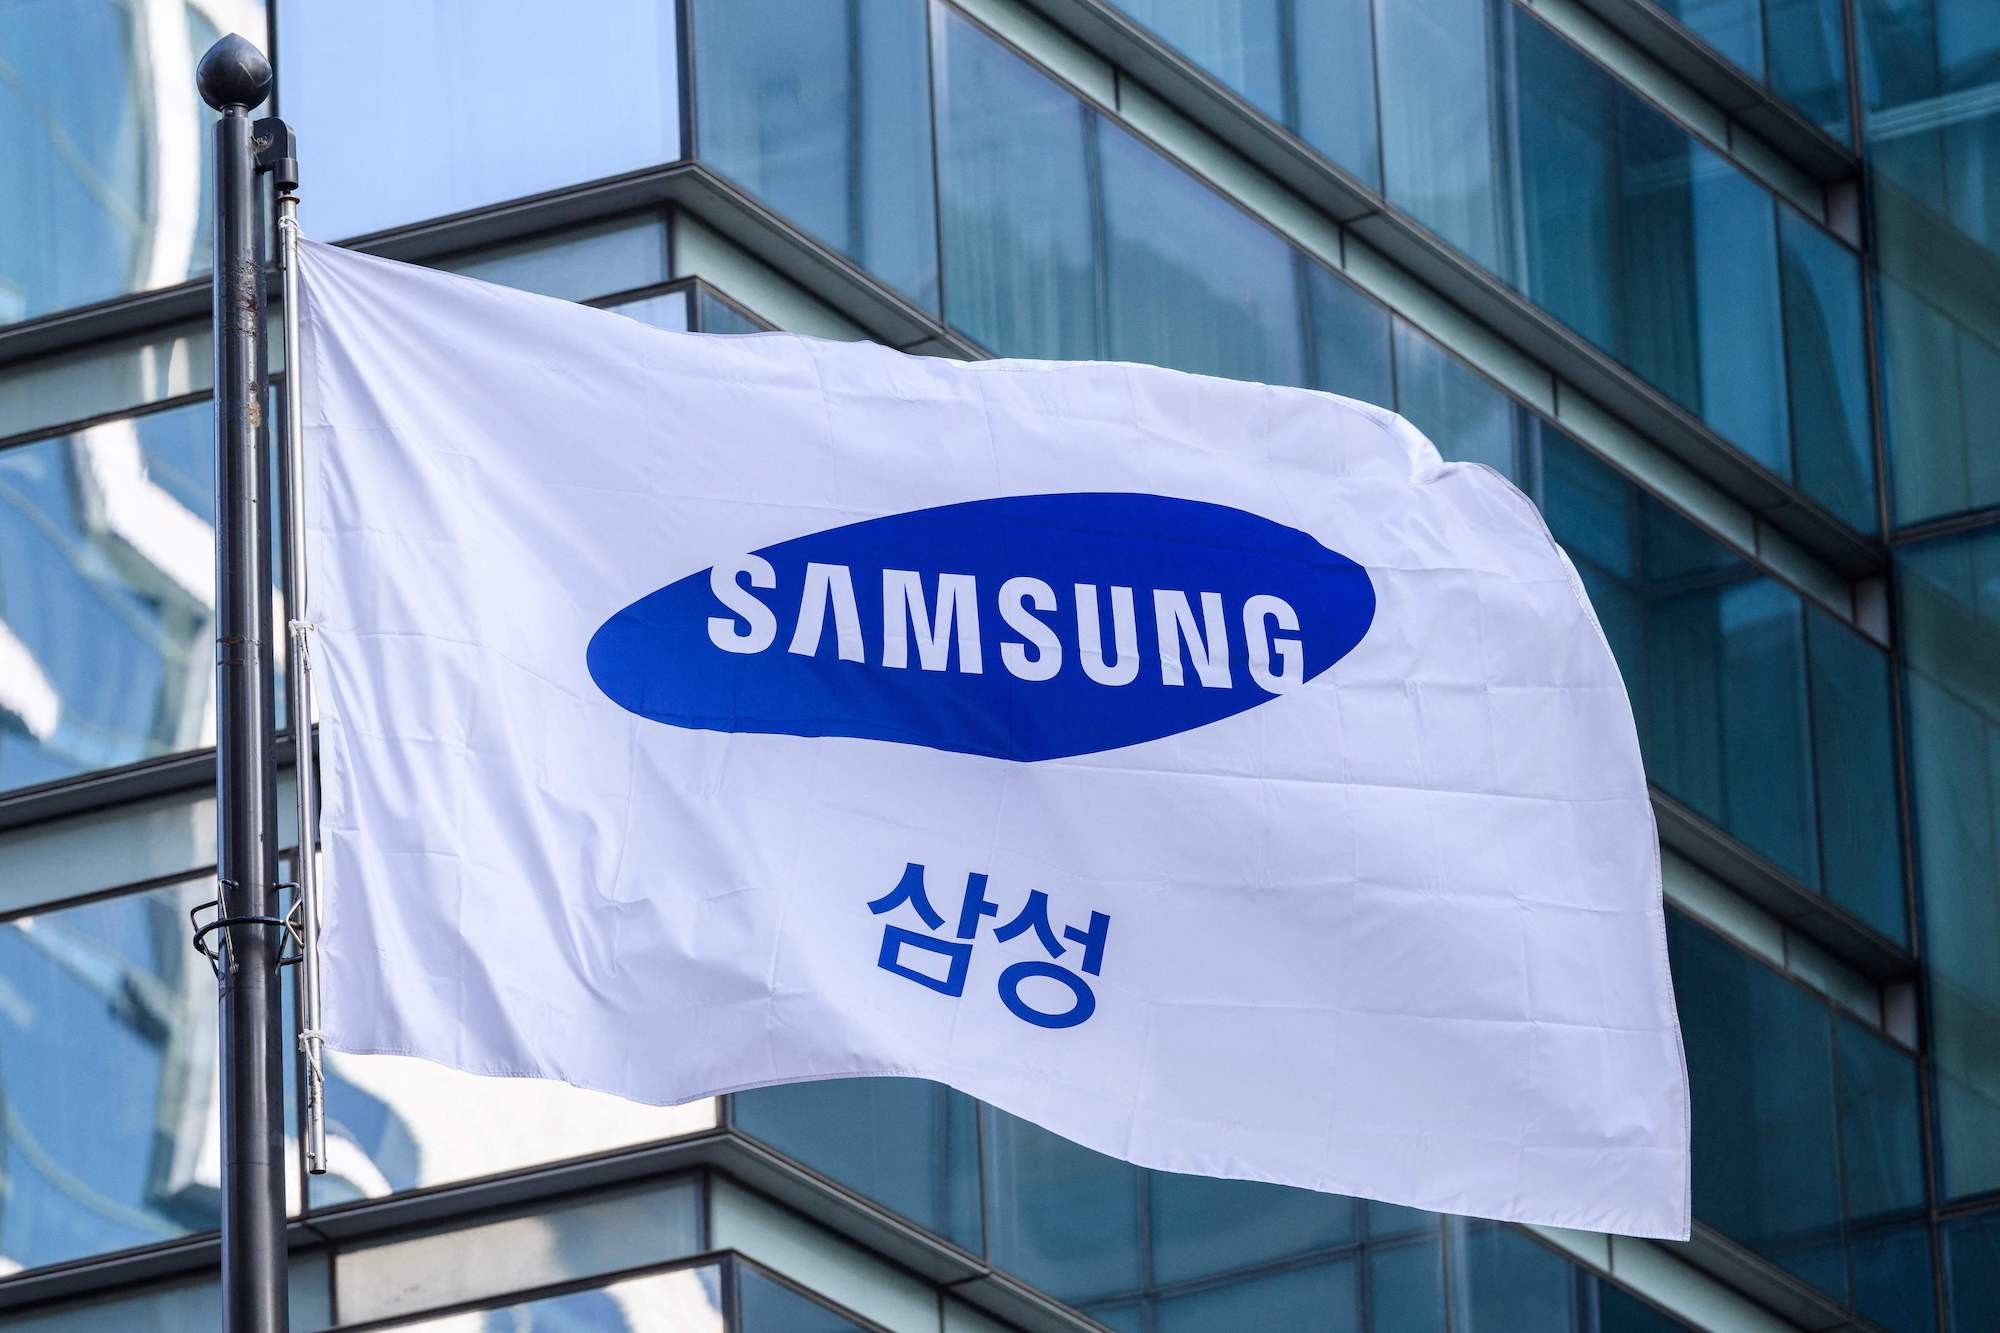 
Lợi nhuận quý IV/2022 của Samsung giảm gần 70% so với cùng kỳ năm 2021
